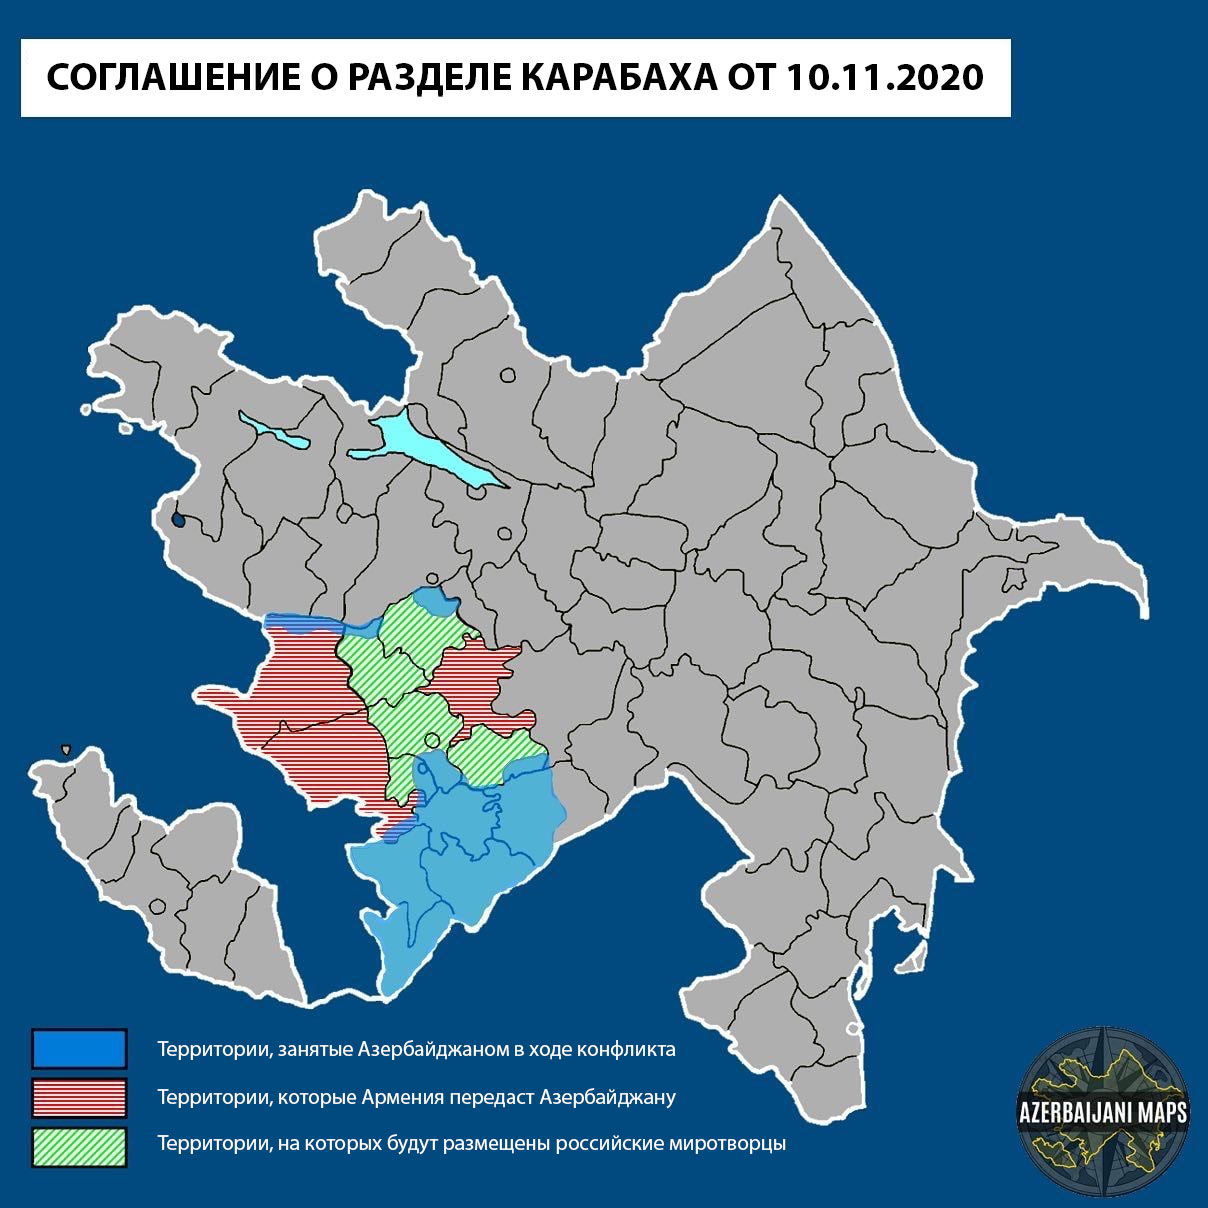 Карта соглашения о разделе Нагорного Карабаха от 10 ноября 2020 года. Источник Azerbaijani Maps